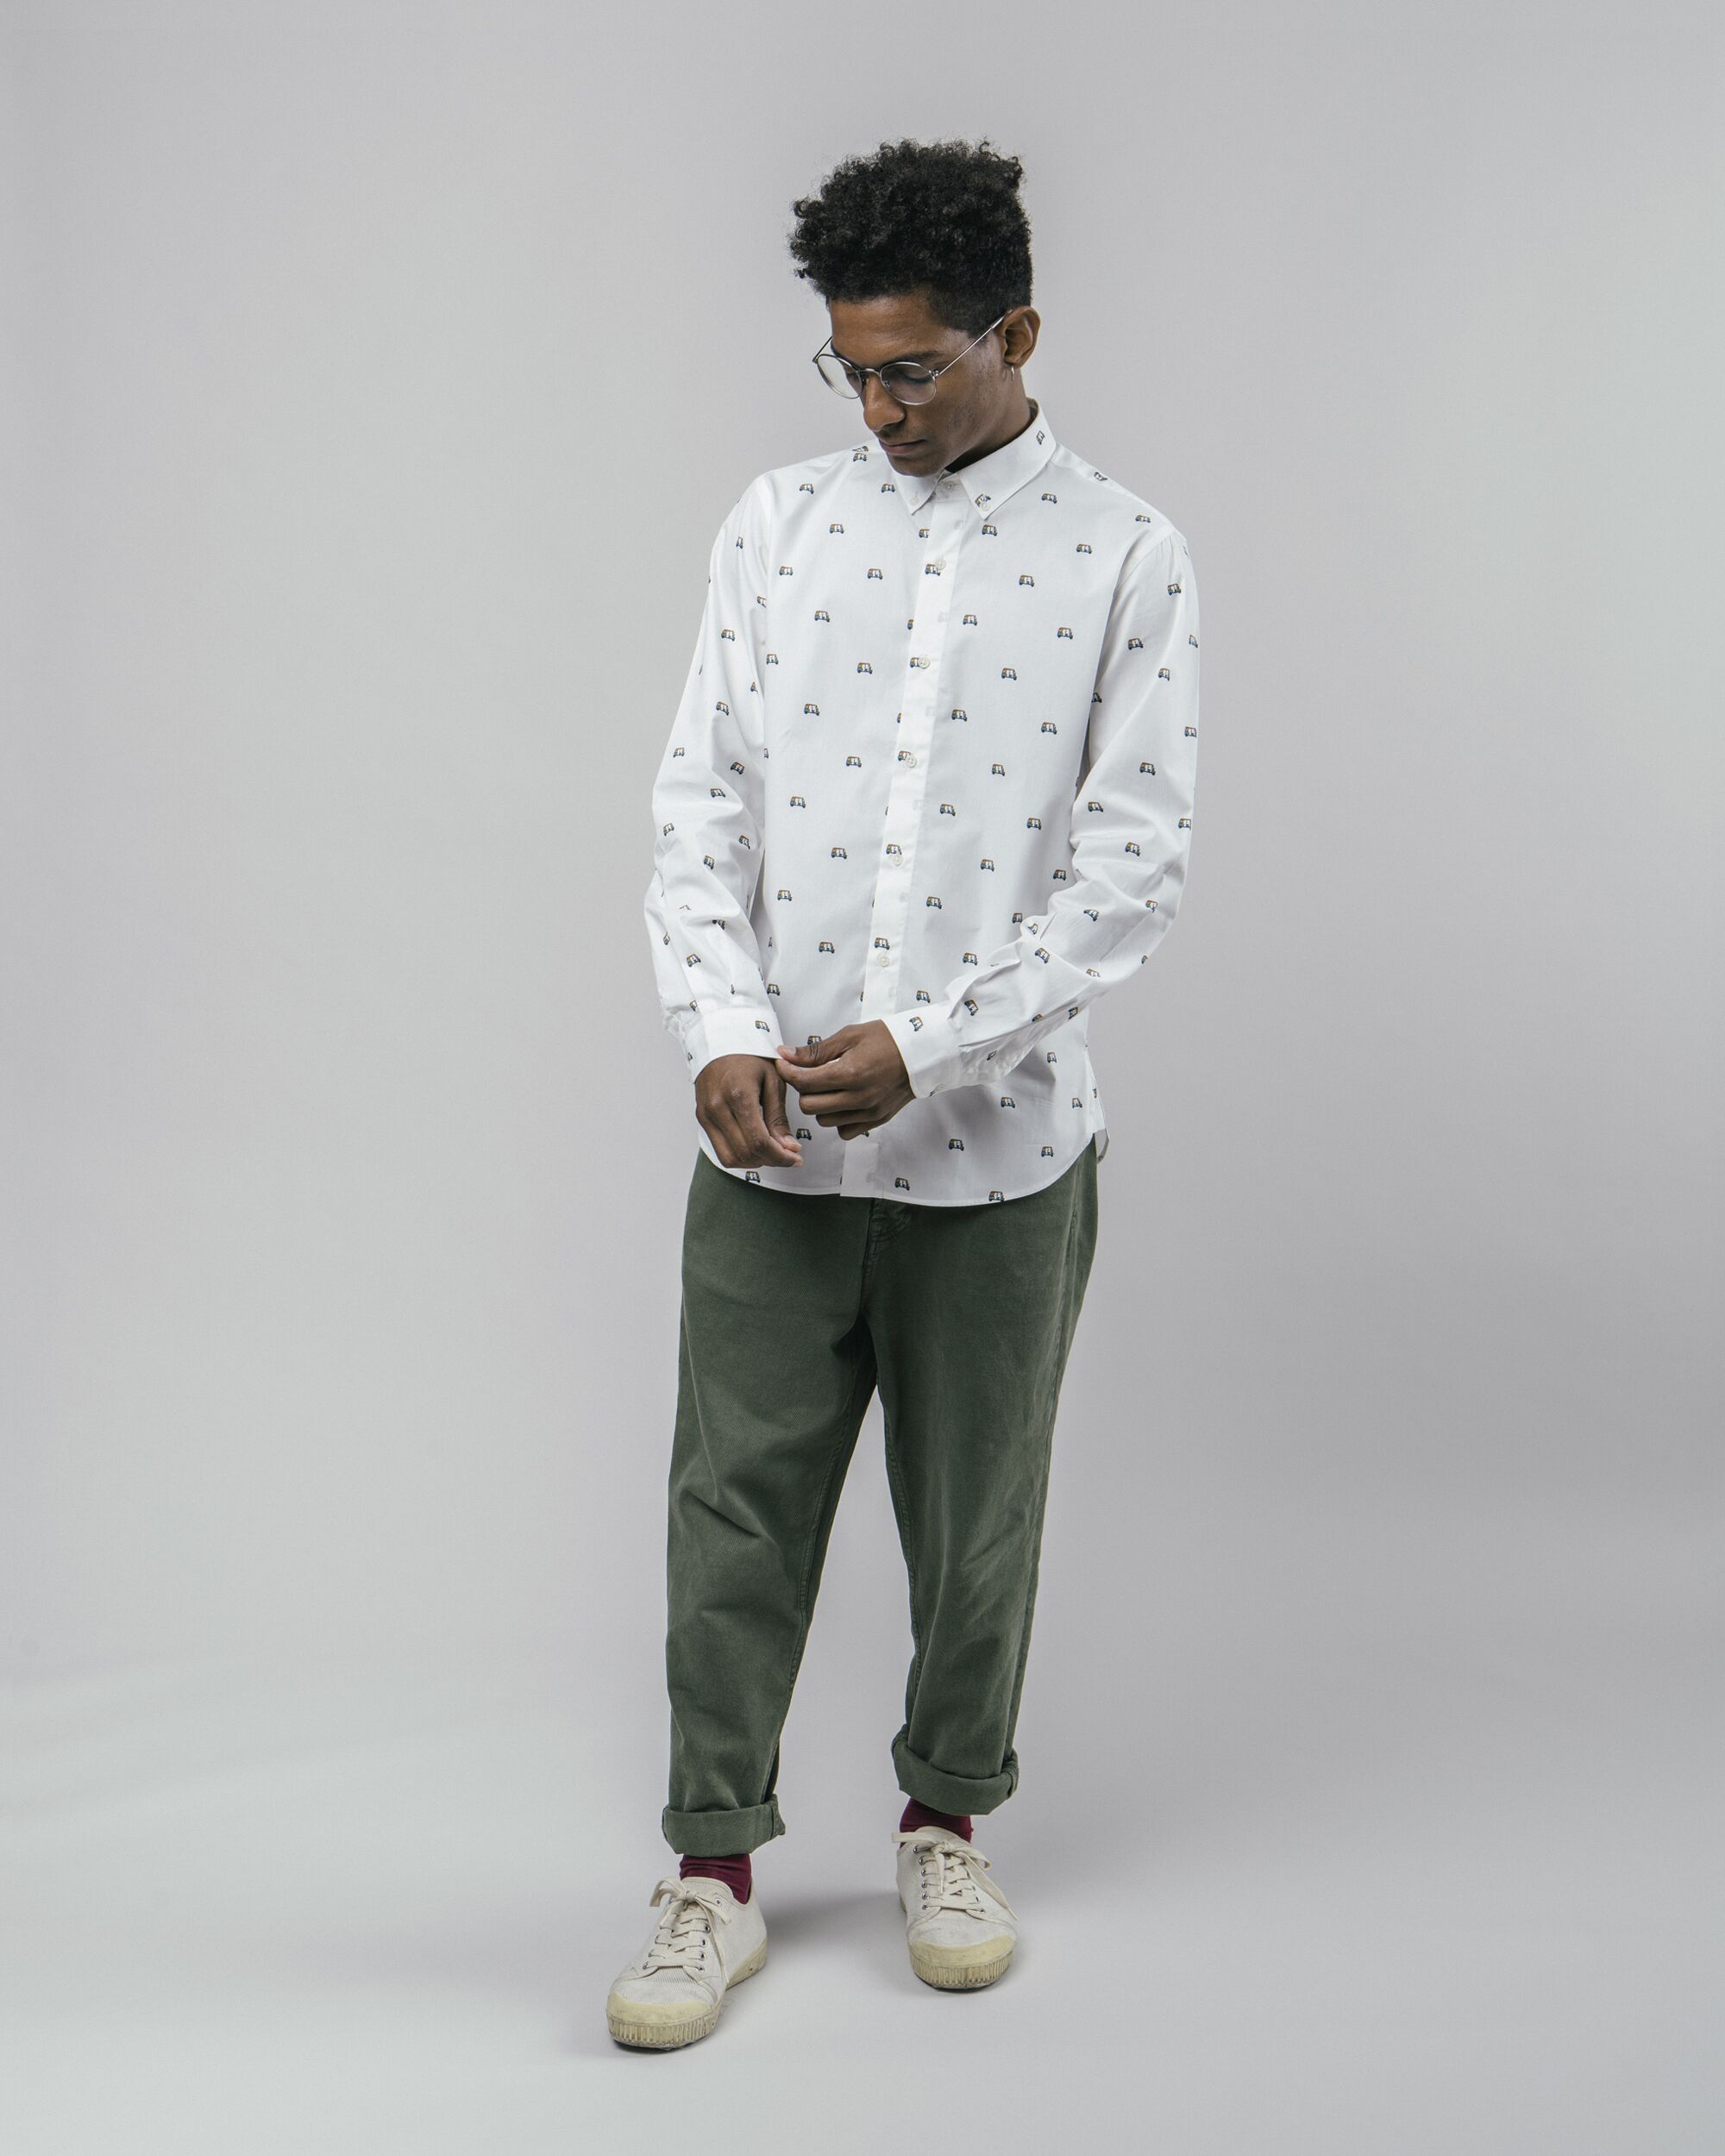 White, printed Tuk Tuk Race shirt made from 100% organic cotton from Brava Fabrics